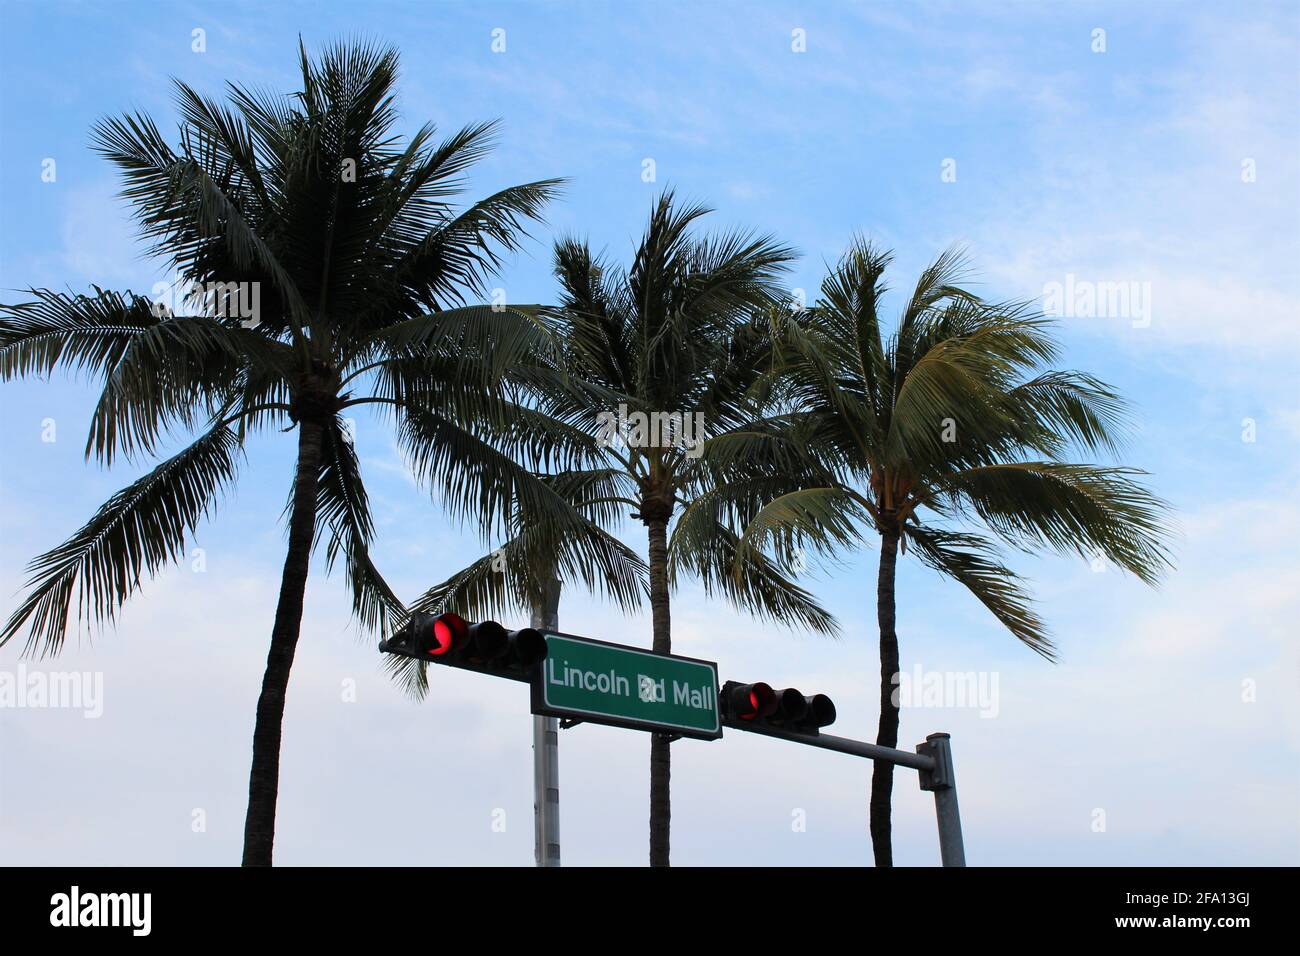 El cartel de la calle Lincoln Road Mall está situado en Miami Beach, con palmeras en el fondo. Foto de stock